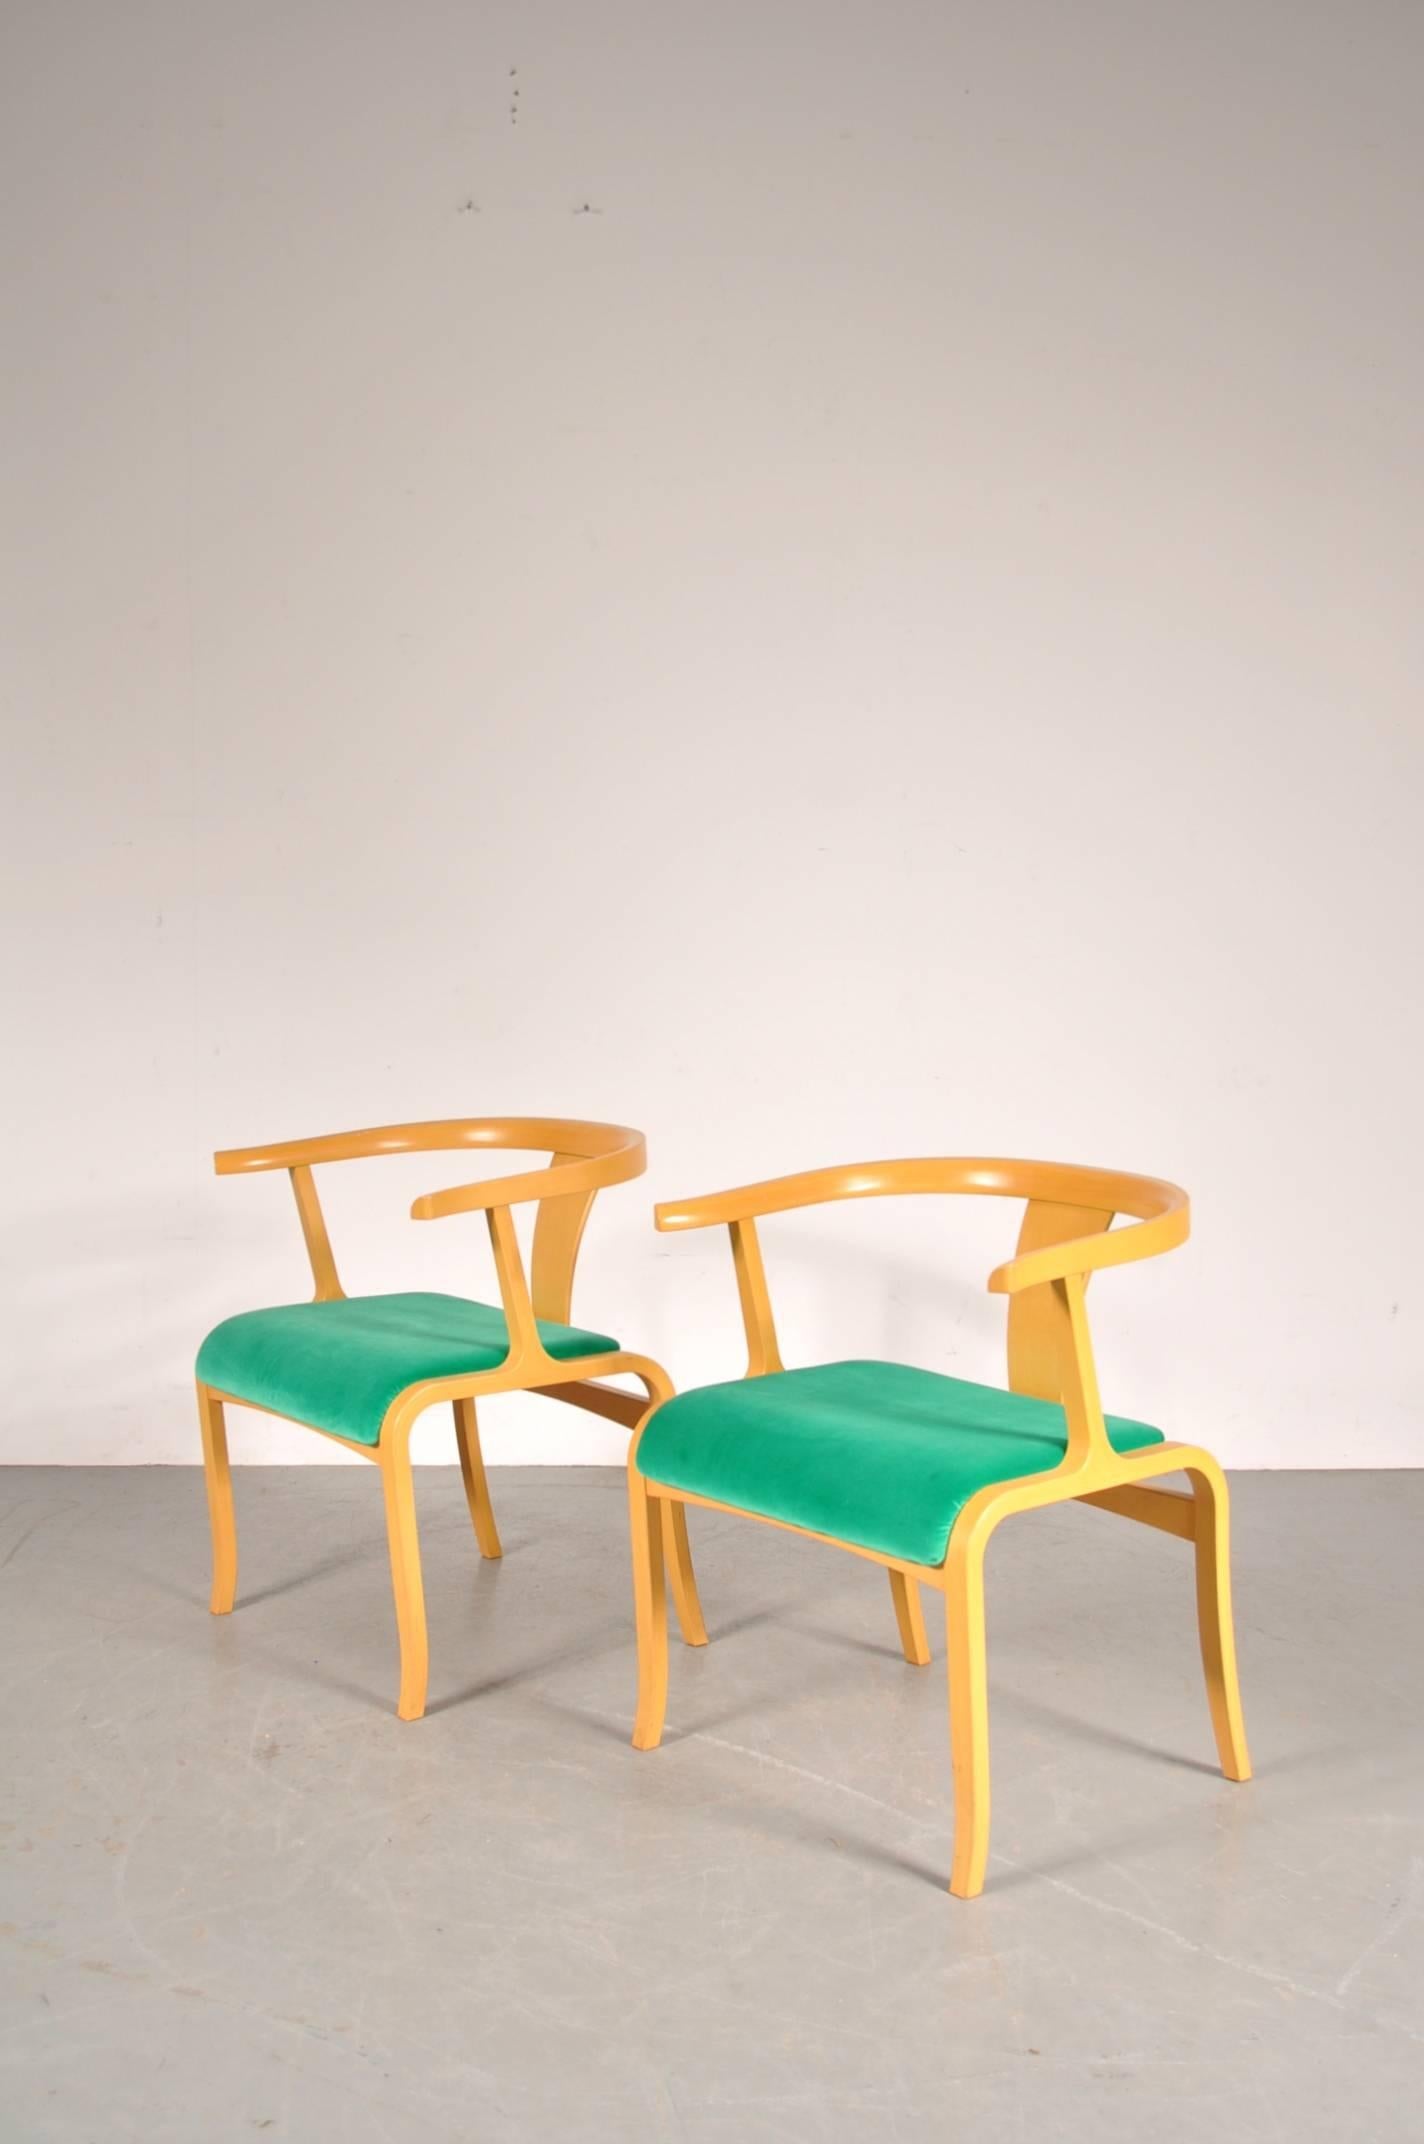 Rare chaise de bureau ou d'appoint, attribuée à Toshiyuki Kita, fabriquée par Tendo Mokko au Japon, vers 1960.

Ces chaises accrocheuses sont fabriquées à partir d'un contreplaqué de bouleau de belle qualité et sont recouvertes d'un nouveau